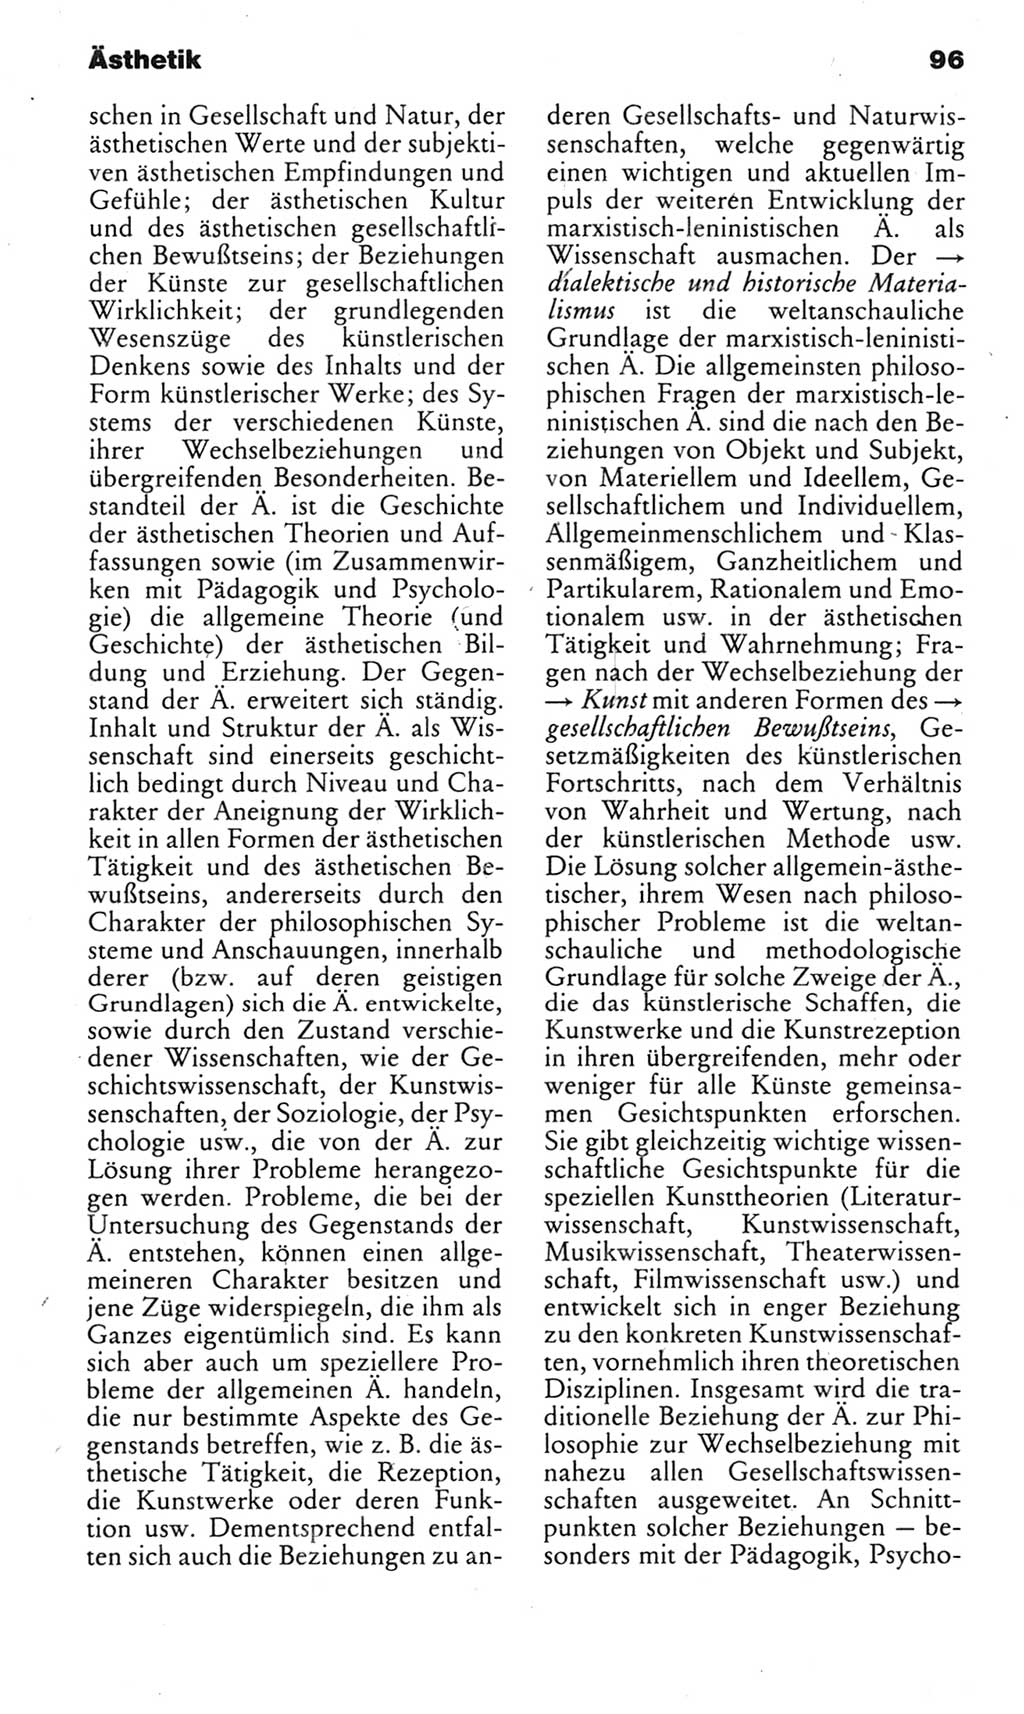 Kleines politisches Wörterbuch [Deutsche Demokratische Republik (DDR)] 1985, Seite 96 (Kl. pol. Wb. DDR 1985, S. 96)